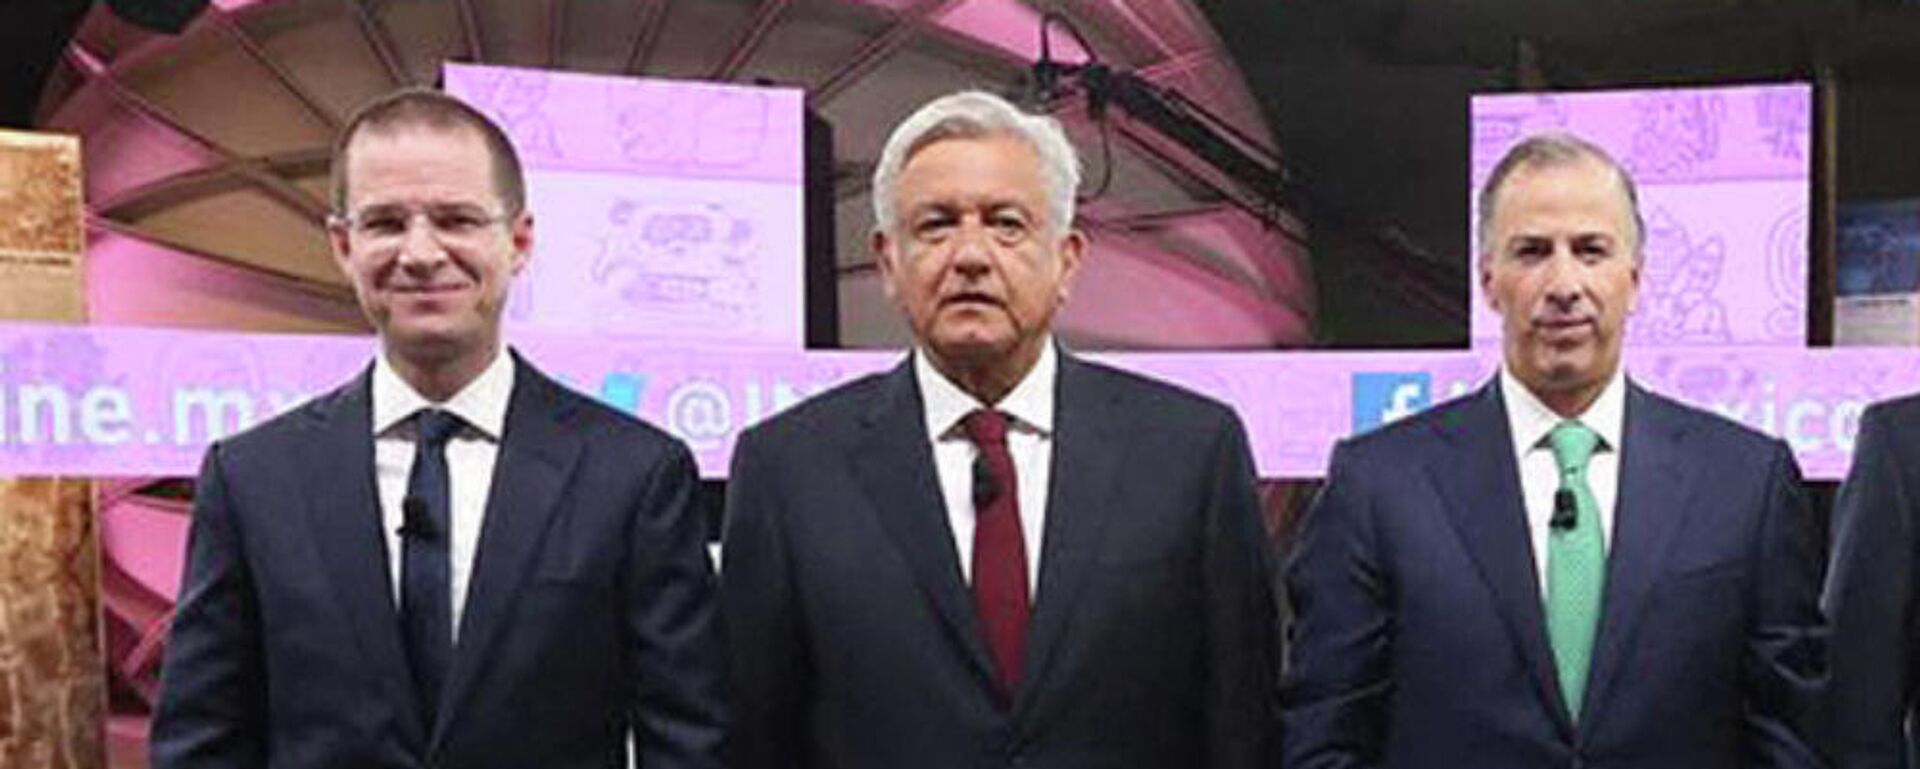 Ricardo Anaya, Andrés Manuel López Obrador y José Antonio Meade, candidatos presidenciales en 2018 - Sputnik Mundo, 1920, 08.11.2021